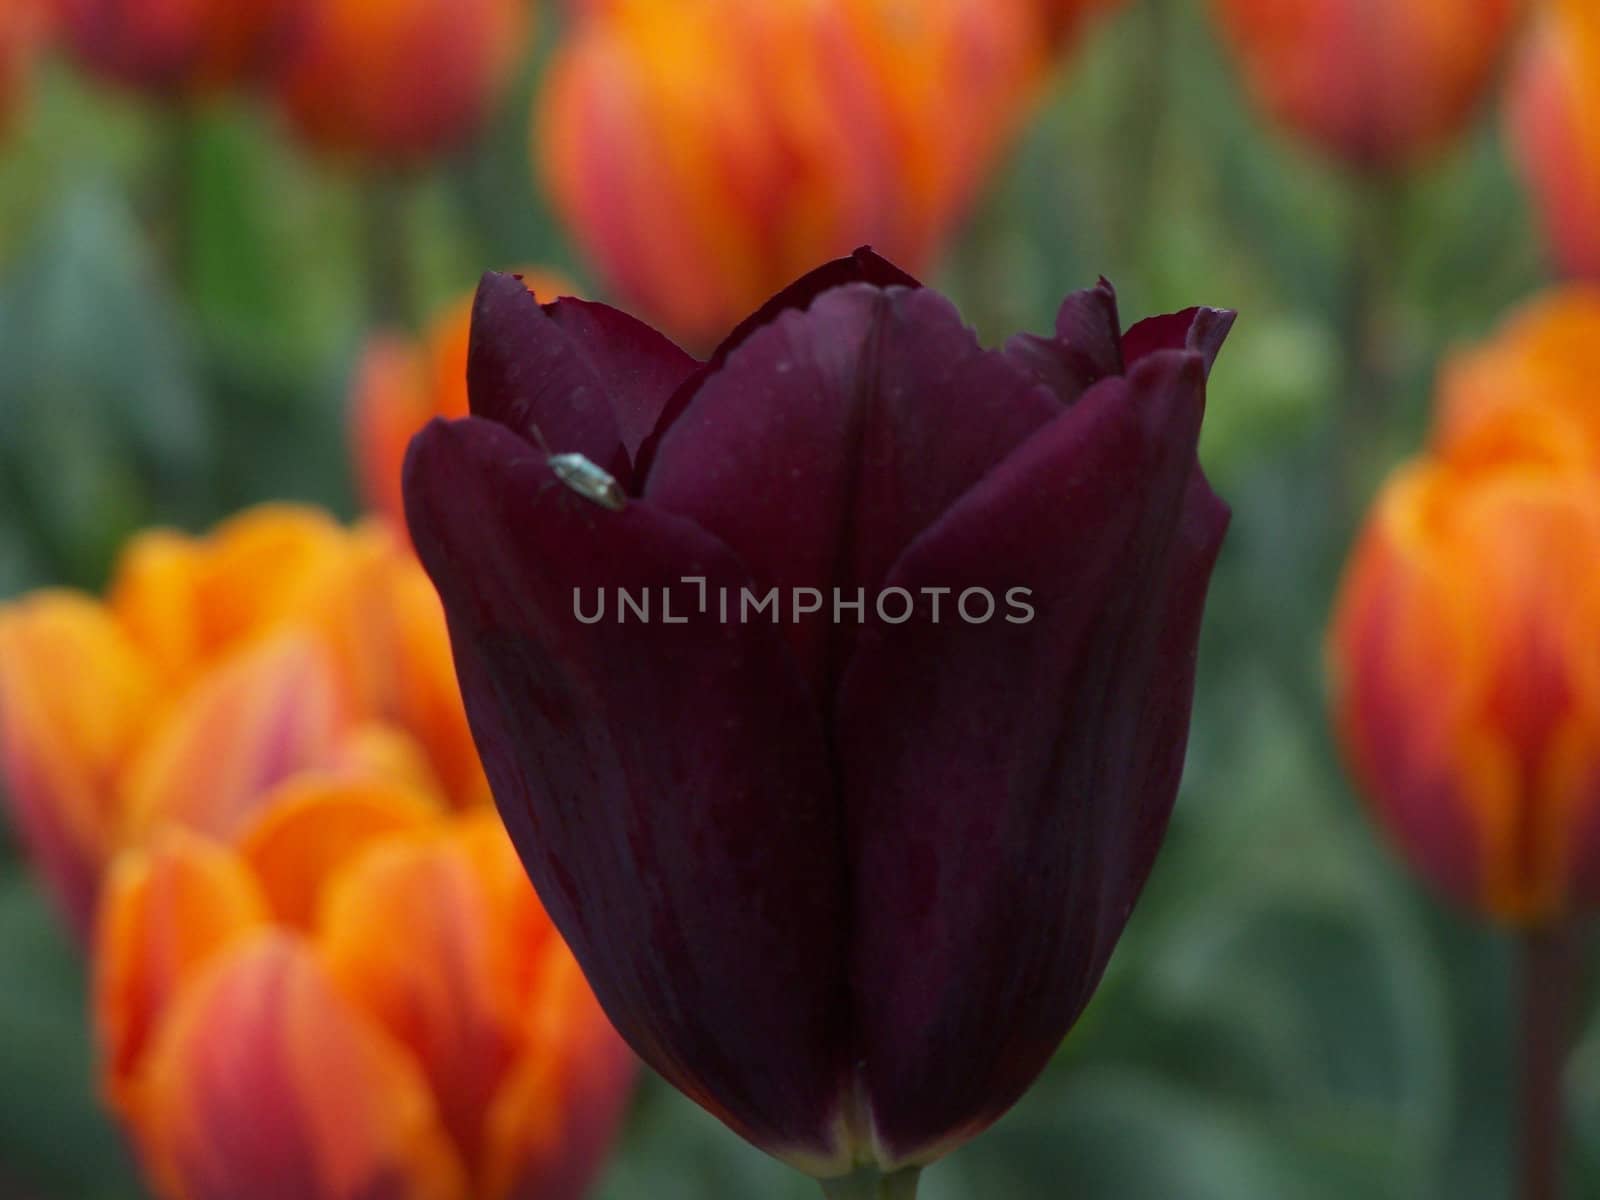 Tulip and the bug by Lessadar